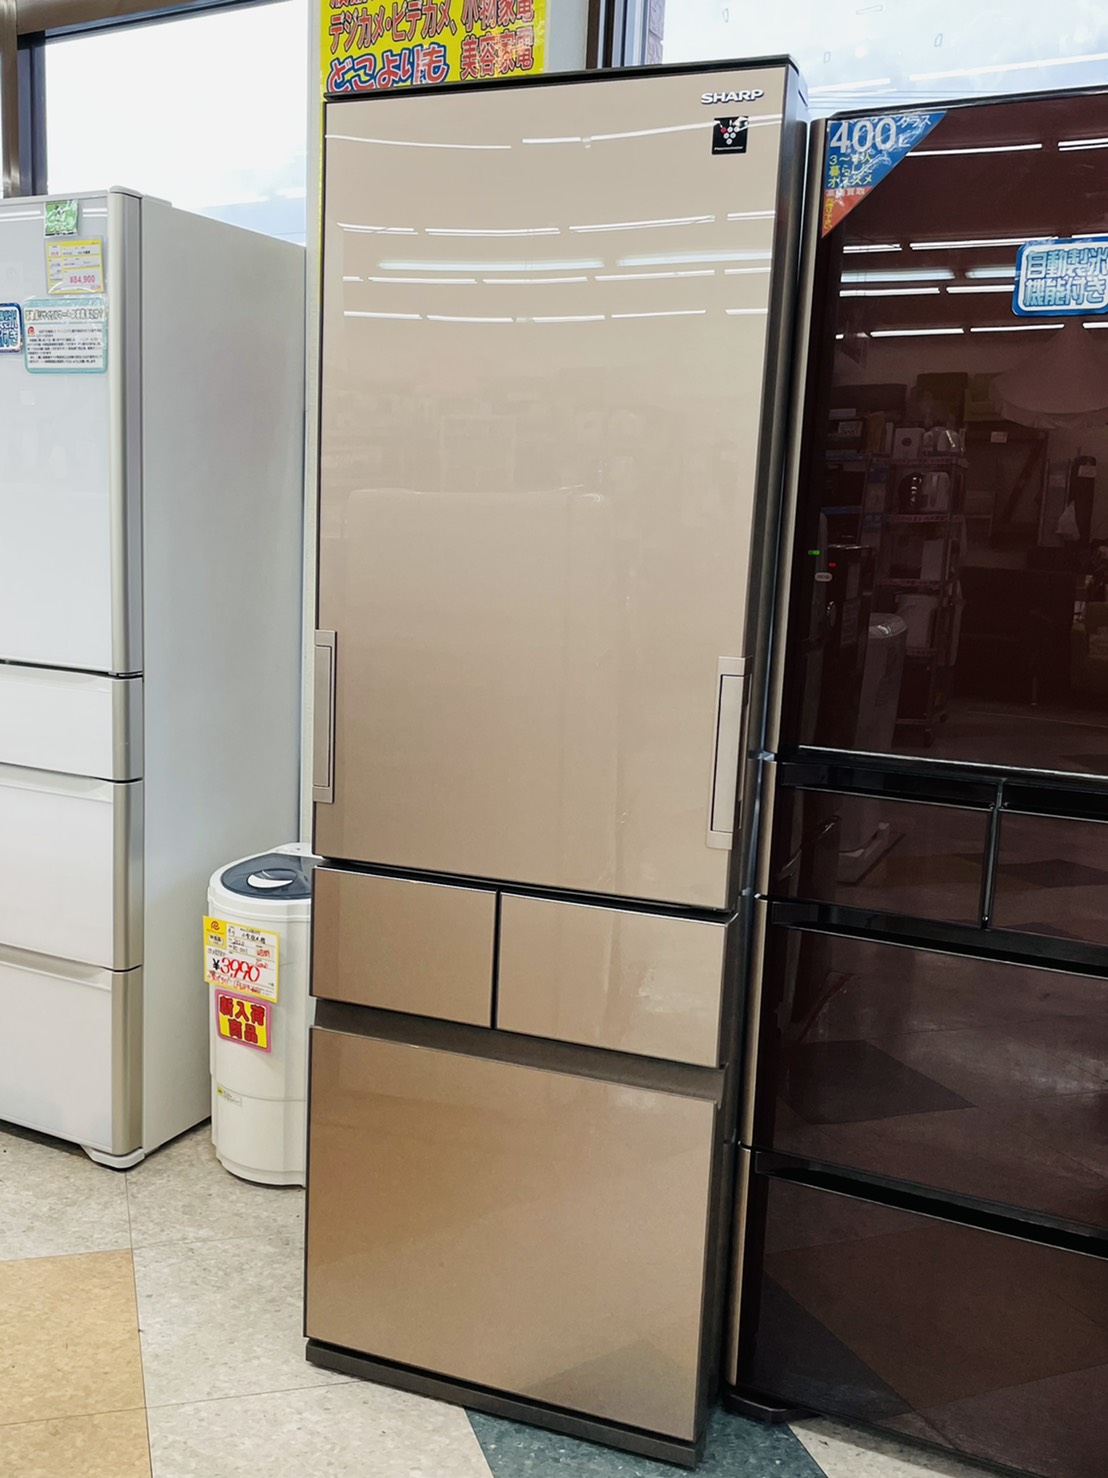 【SHARP(シャープ) / 415Lファミリー冷蔵庫 / 2018年 / SJ-GT42D】買い取りさせて頂きました！！ - リサイクルマートは現在冷蔵庫の買取、家具の買取強化中です！お気軽にお問い合わせください。